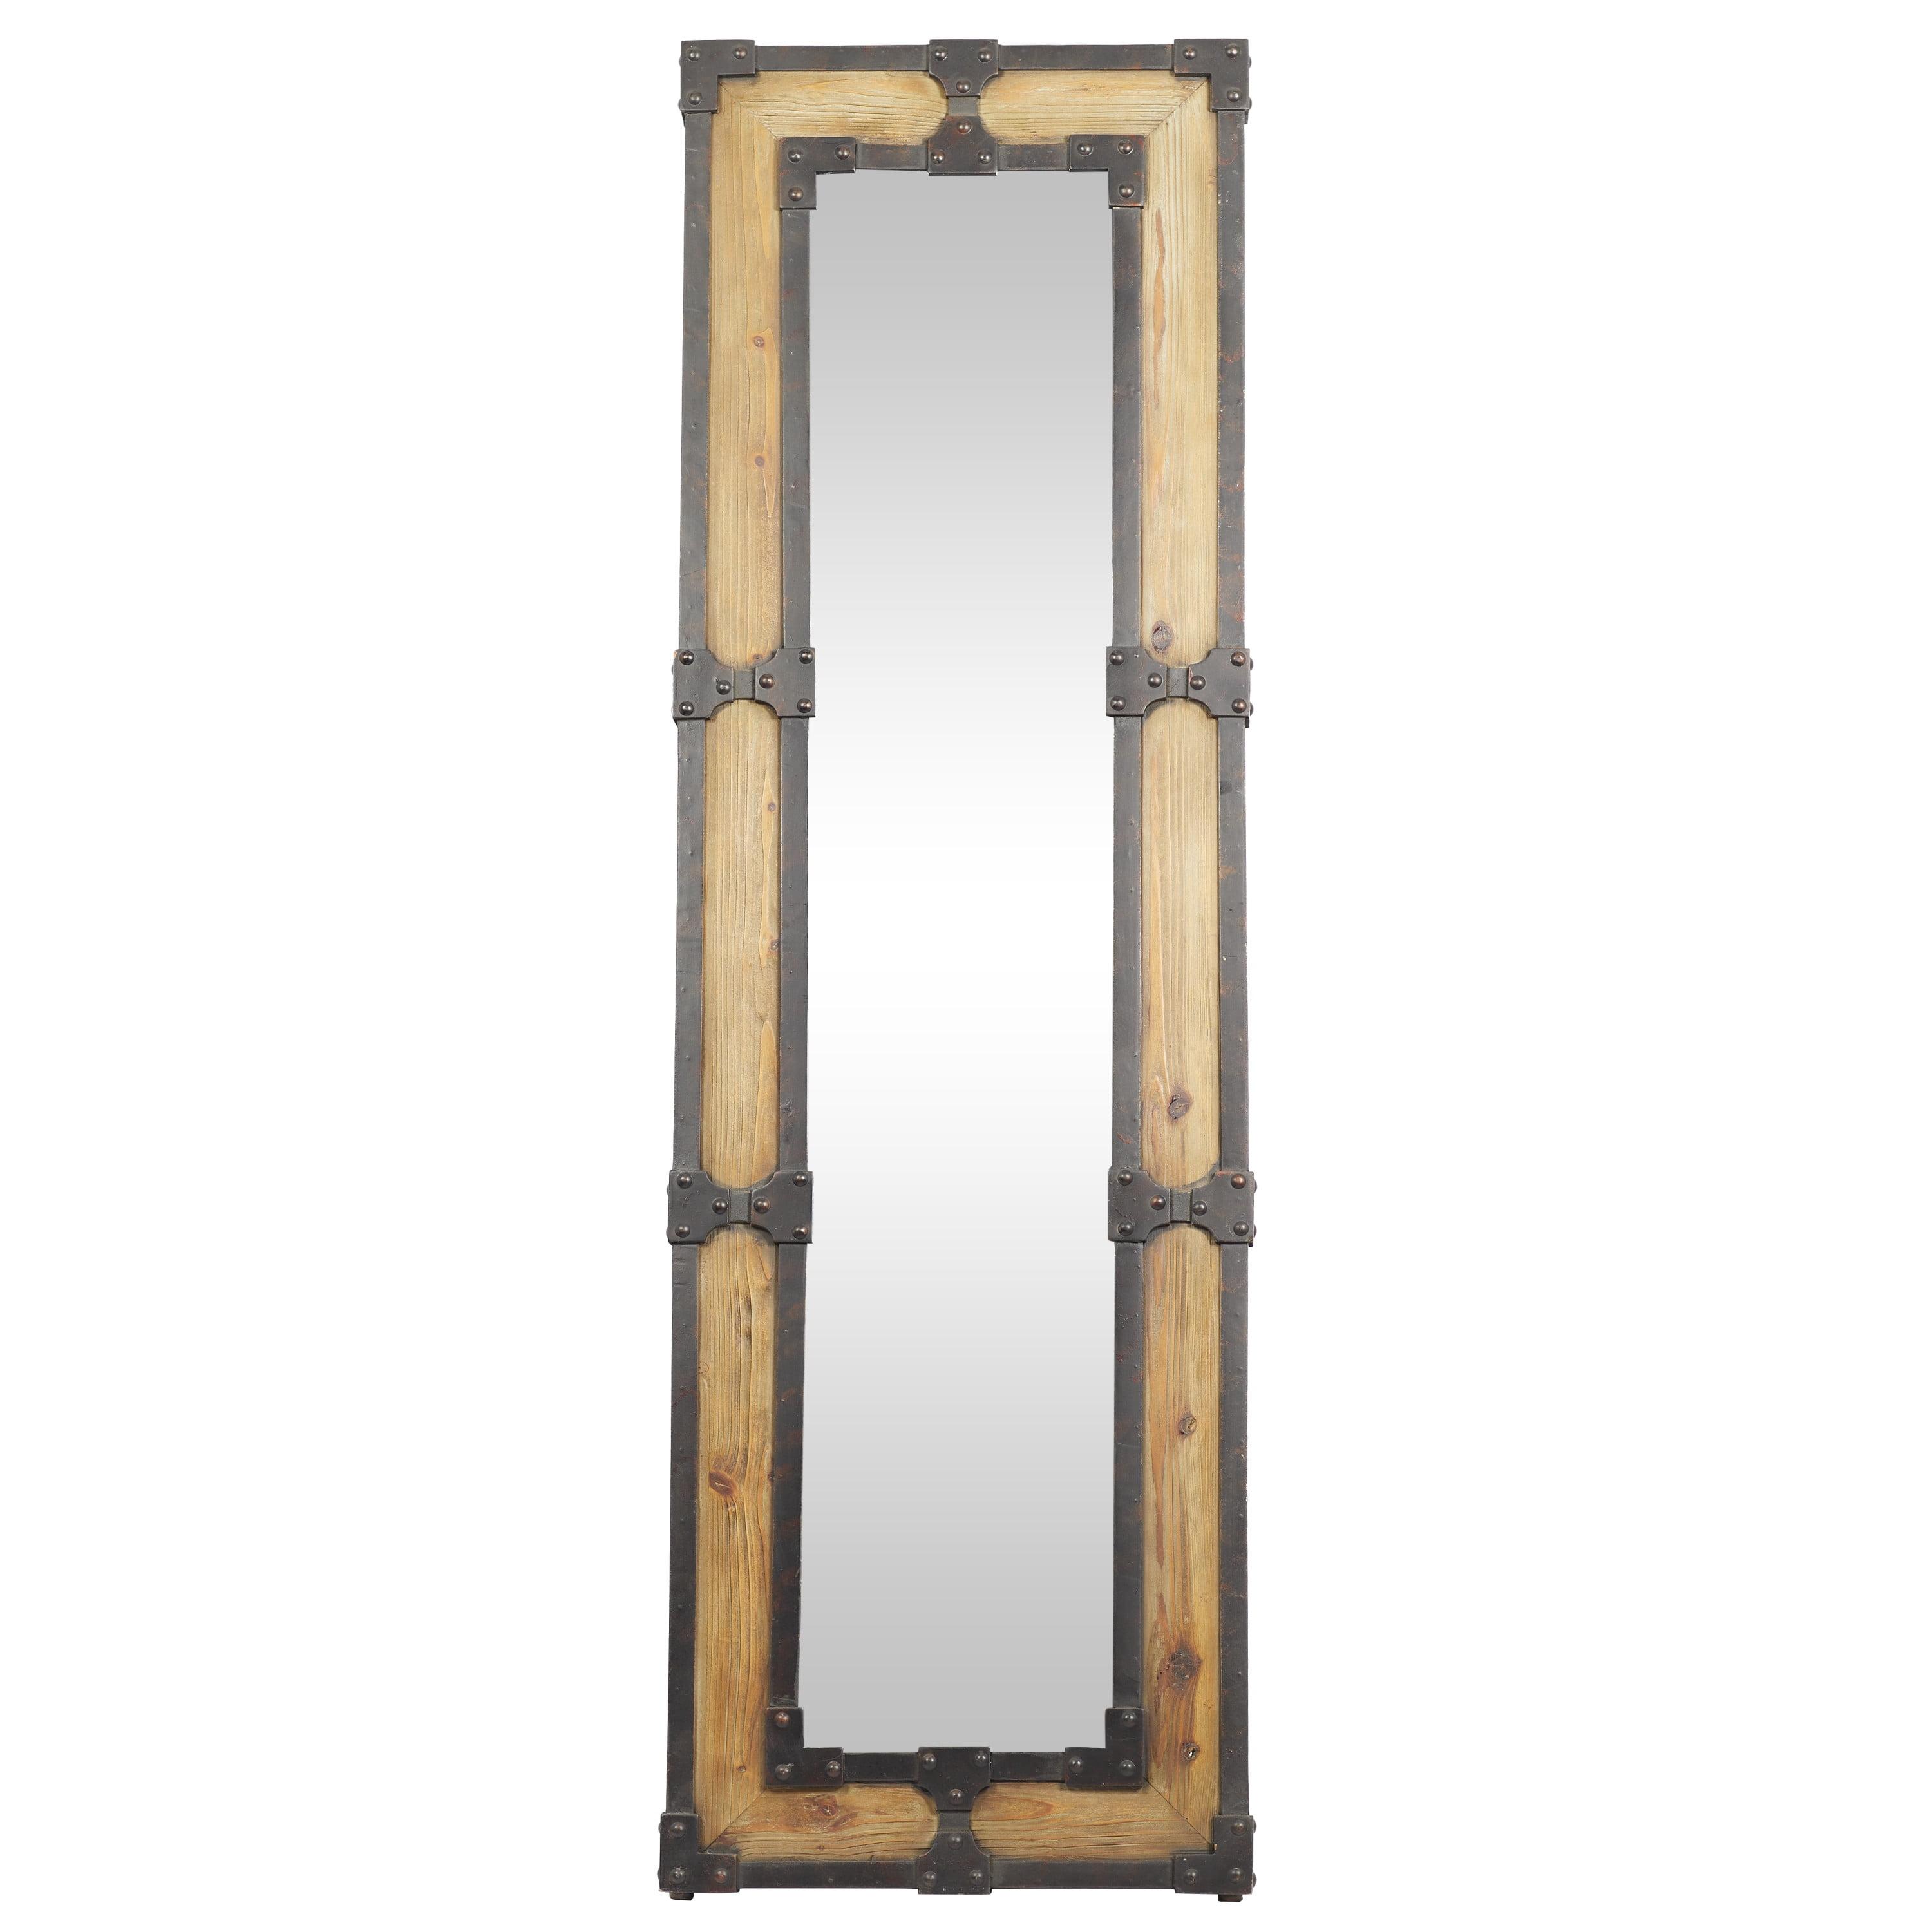 Rustic Brown Wood Full-Length Rectangular Floor Mirror